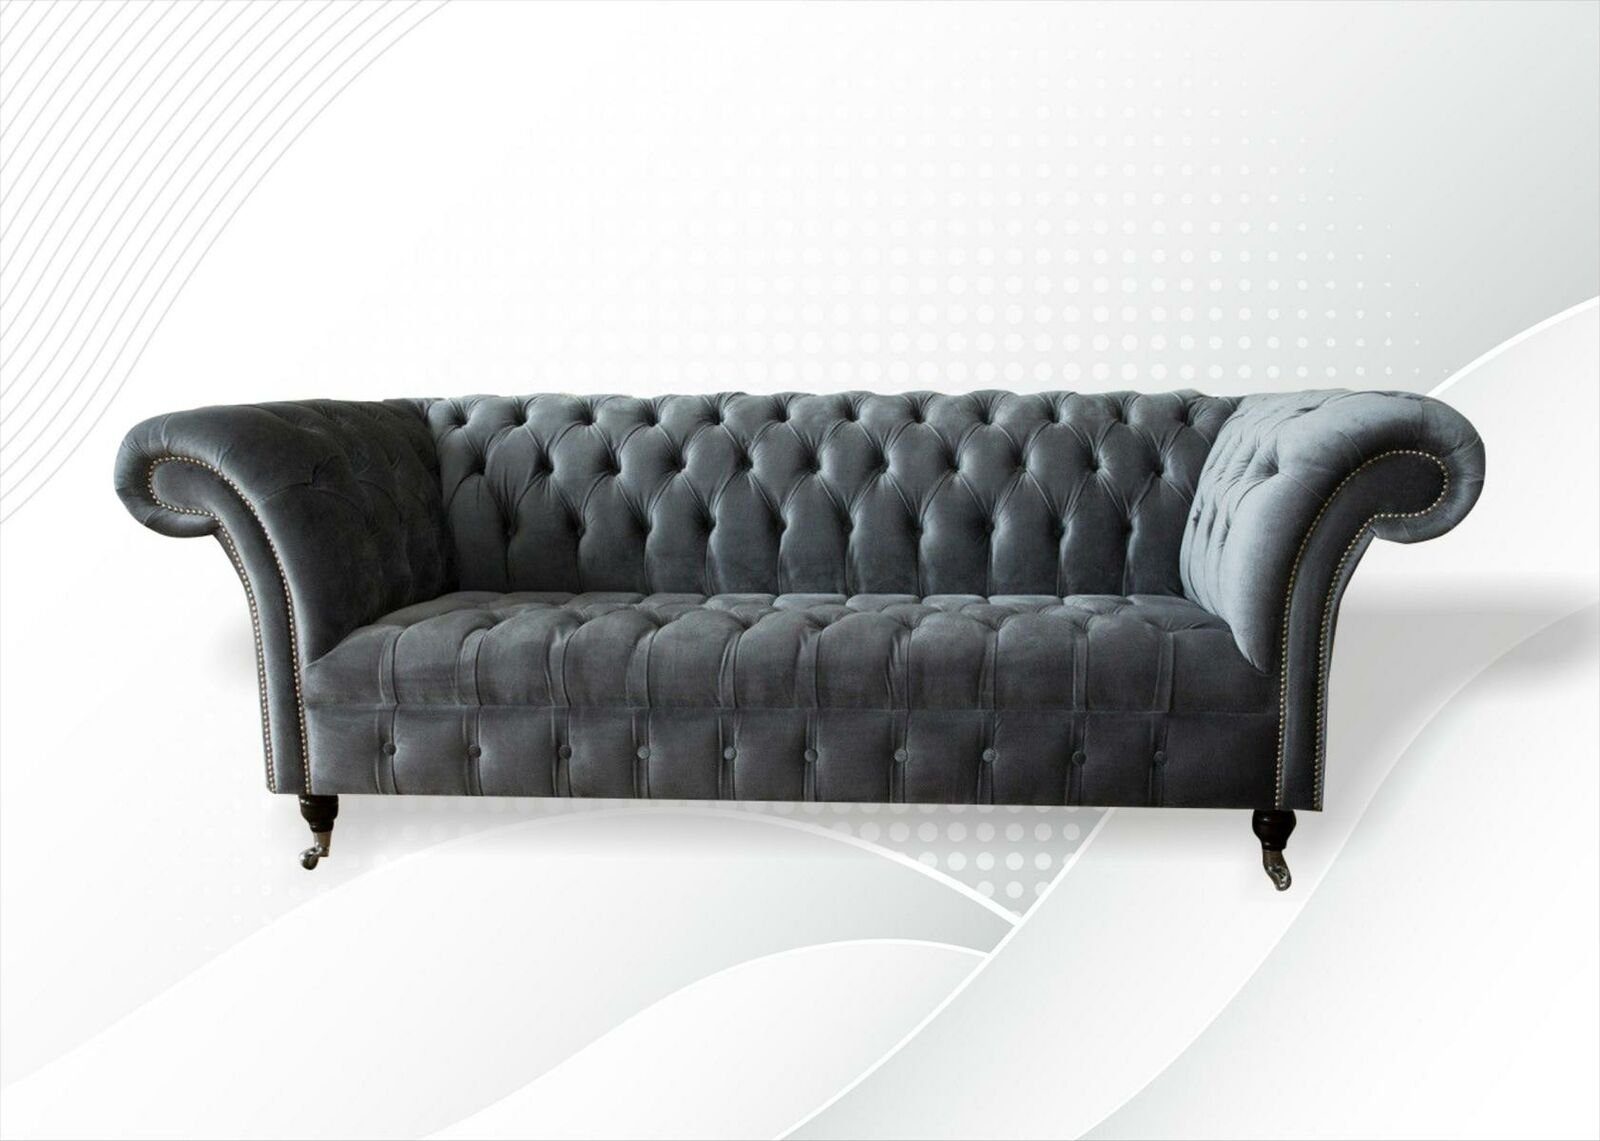 JVmoebel Chesterfield-Sofa, Chesterfield Grau Dreisitzer Kreative Möbel Neu Wohnzimmer Modern Design Sofa